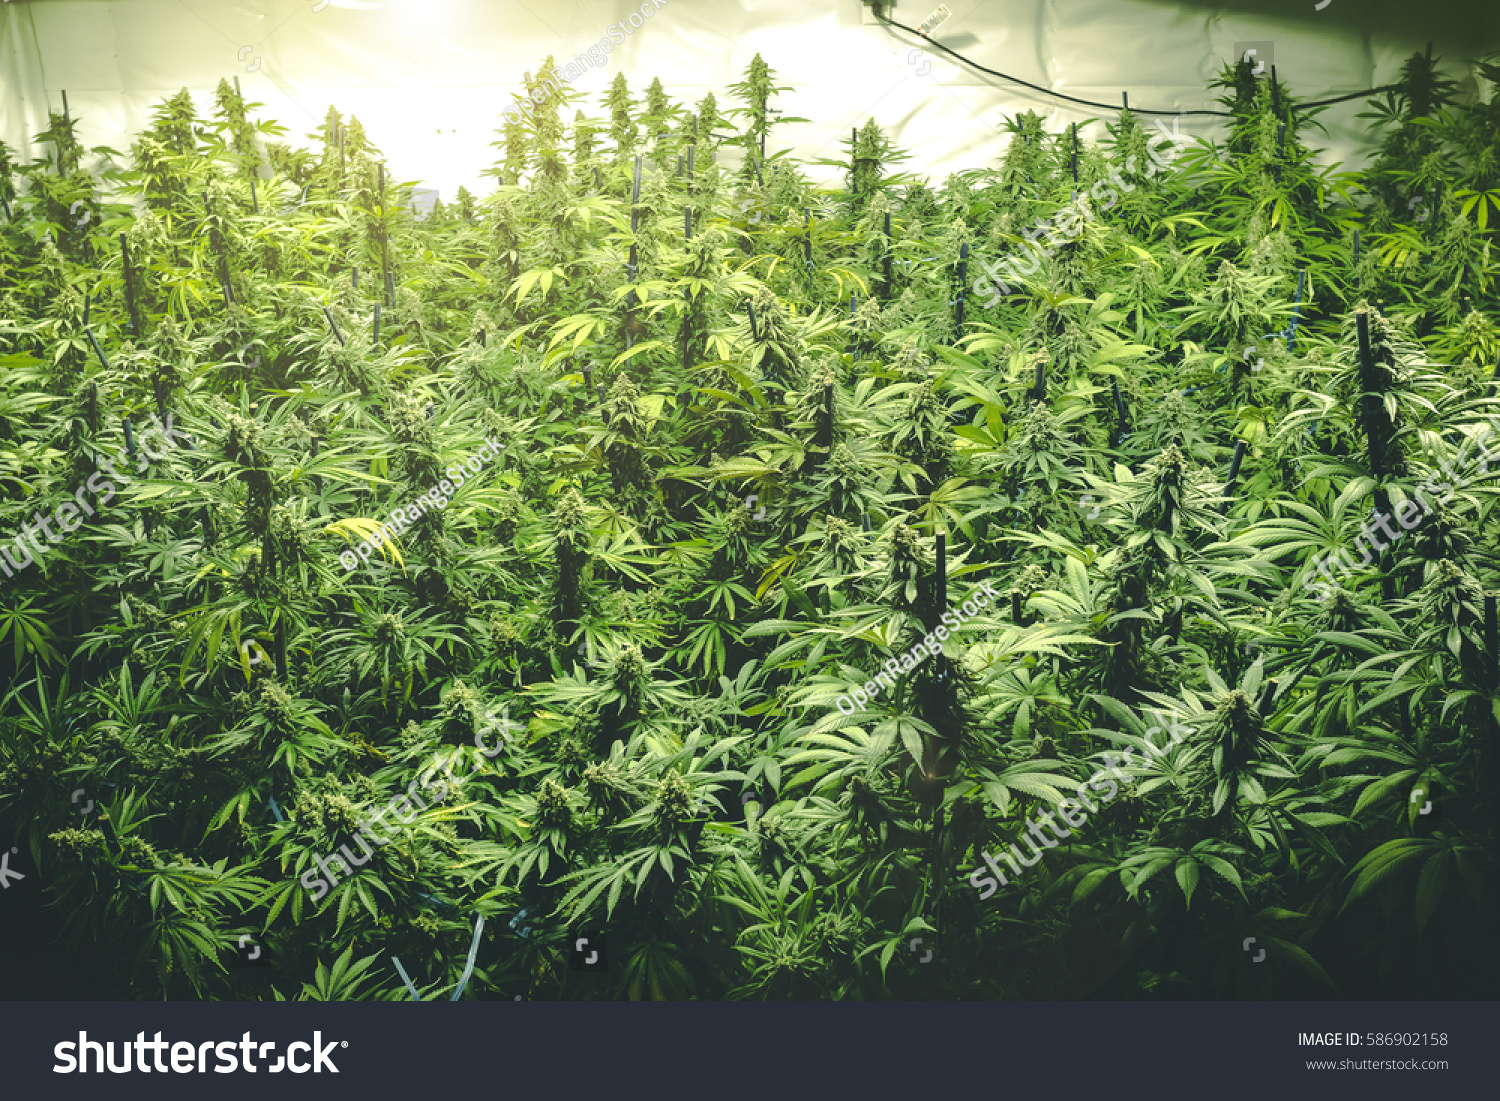 Cultiver de gros plants de cannabis en intérieur